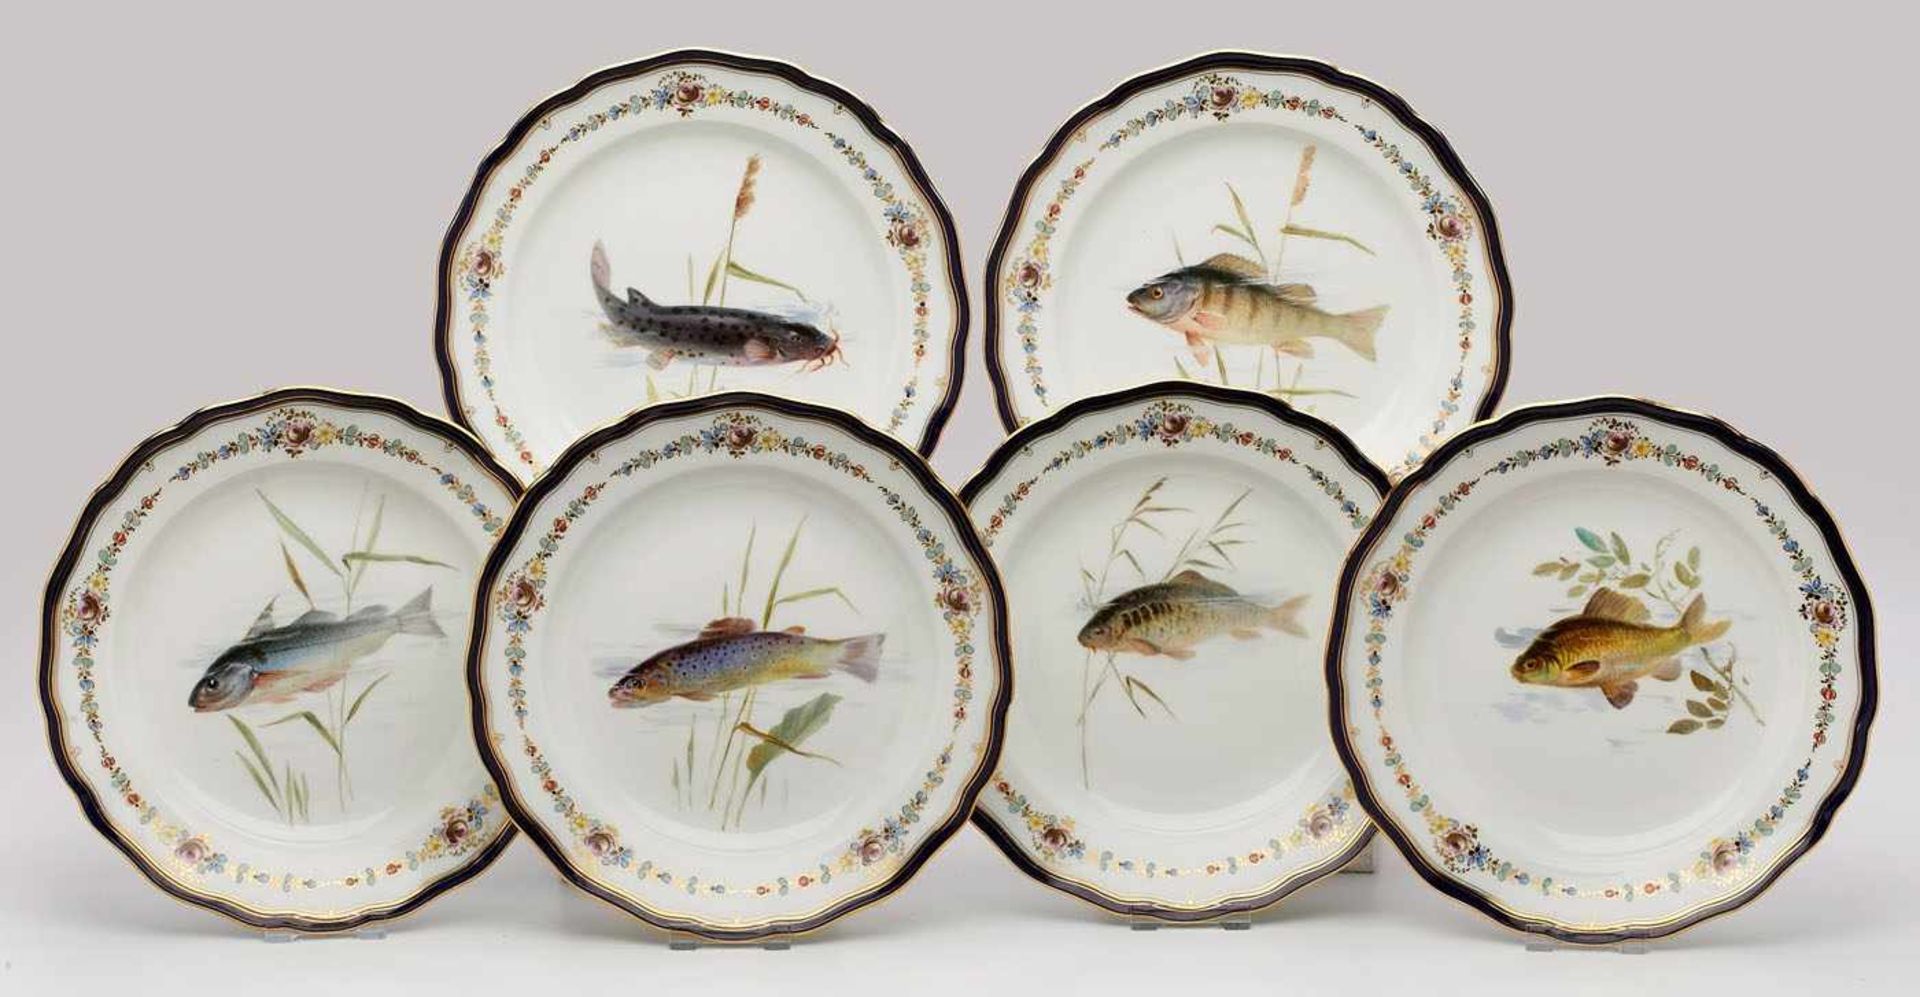 Satz von 6 Tellern mit Fischmotiven,Meissen um 1900. Form "Neuer Ausschnitt". Spiegel m. versch.